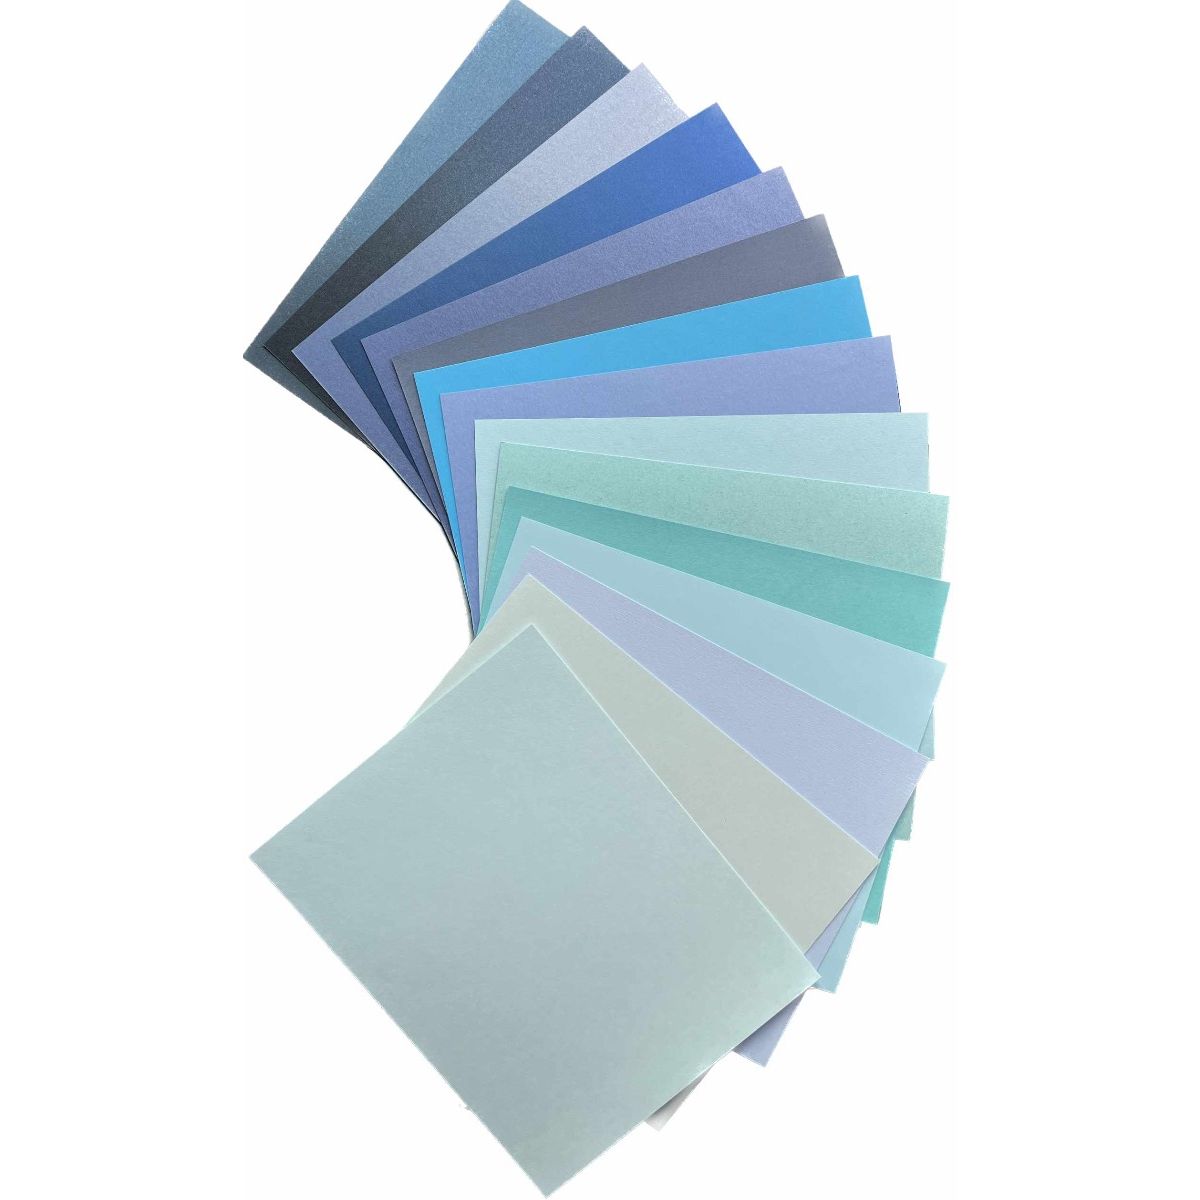 Plike (Plastic-Like) Paper - 12 x 12 - ROYAL BLUE - 122LB COVER - 100 PK